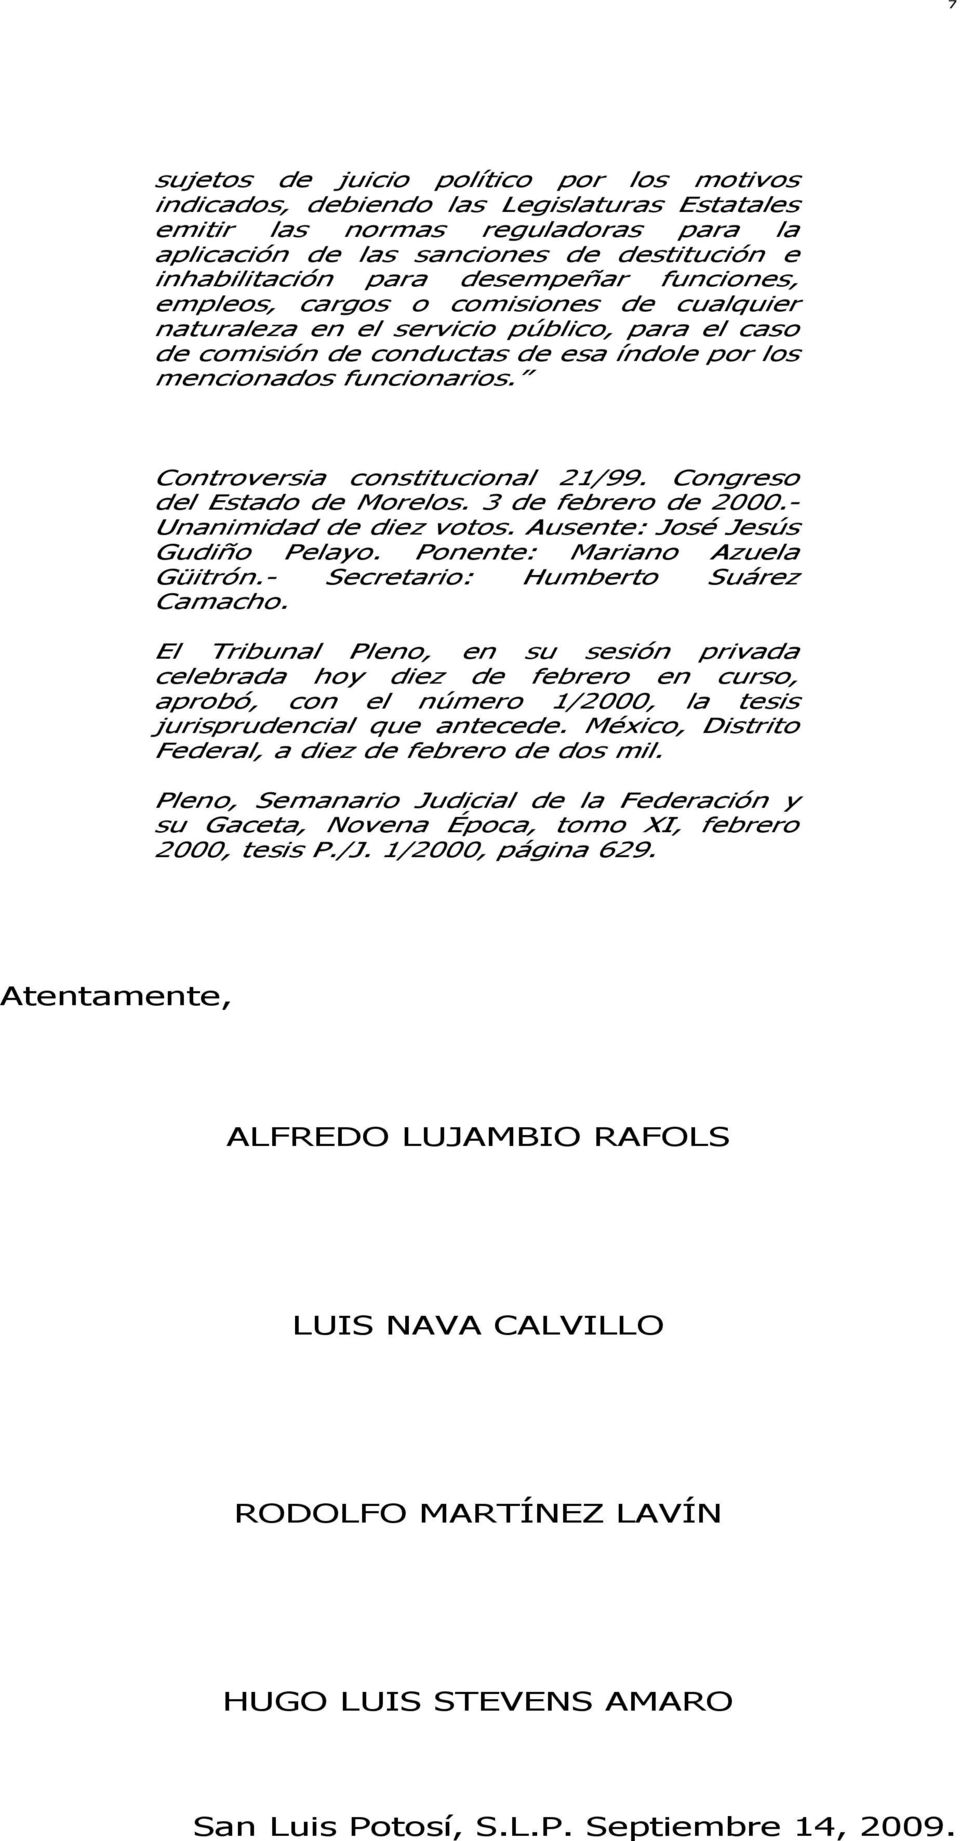 Controversia constitucional 21/99. Congreso del Estado de Morelos. 3 de febrero de 2000.- Unanimidad de diez votos. Ausente: José Jesús Gudiño Pelayo. Ponente: Mariano Azuela Güitrón.